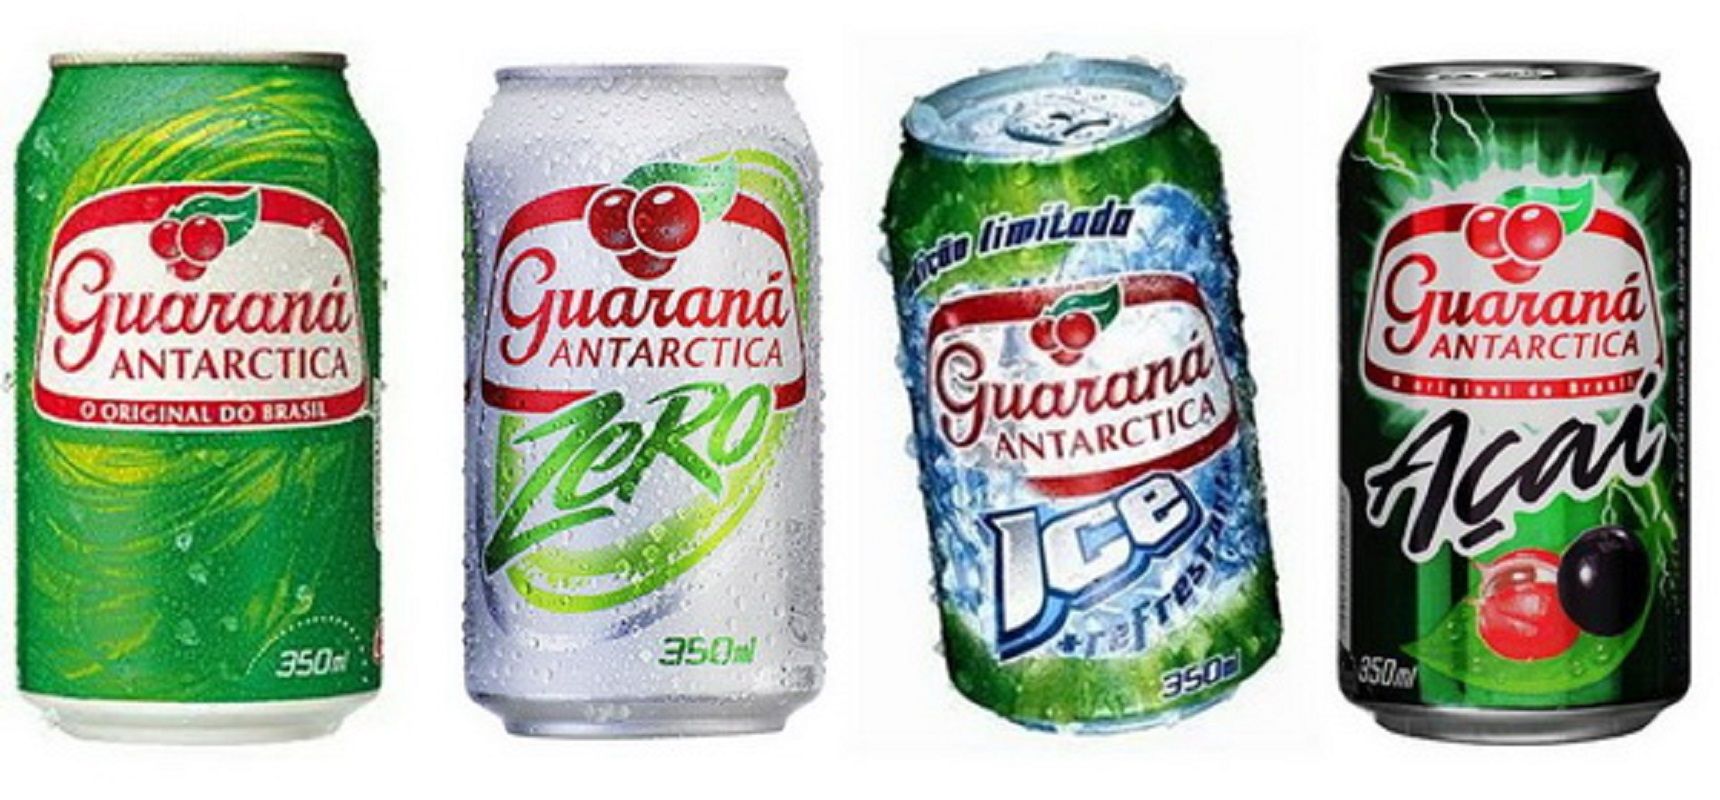 Guarana drinks